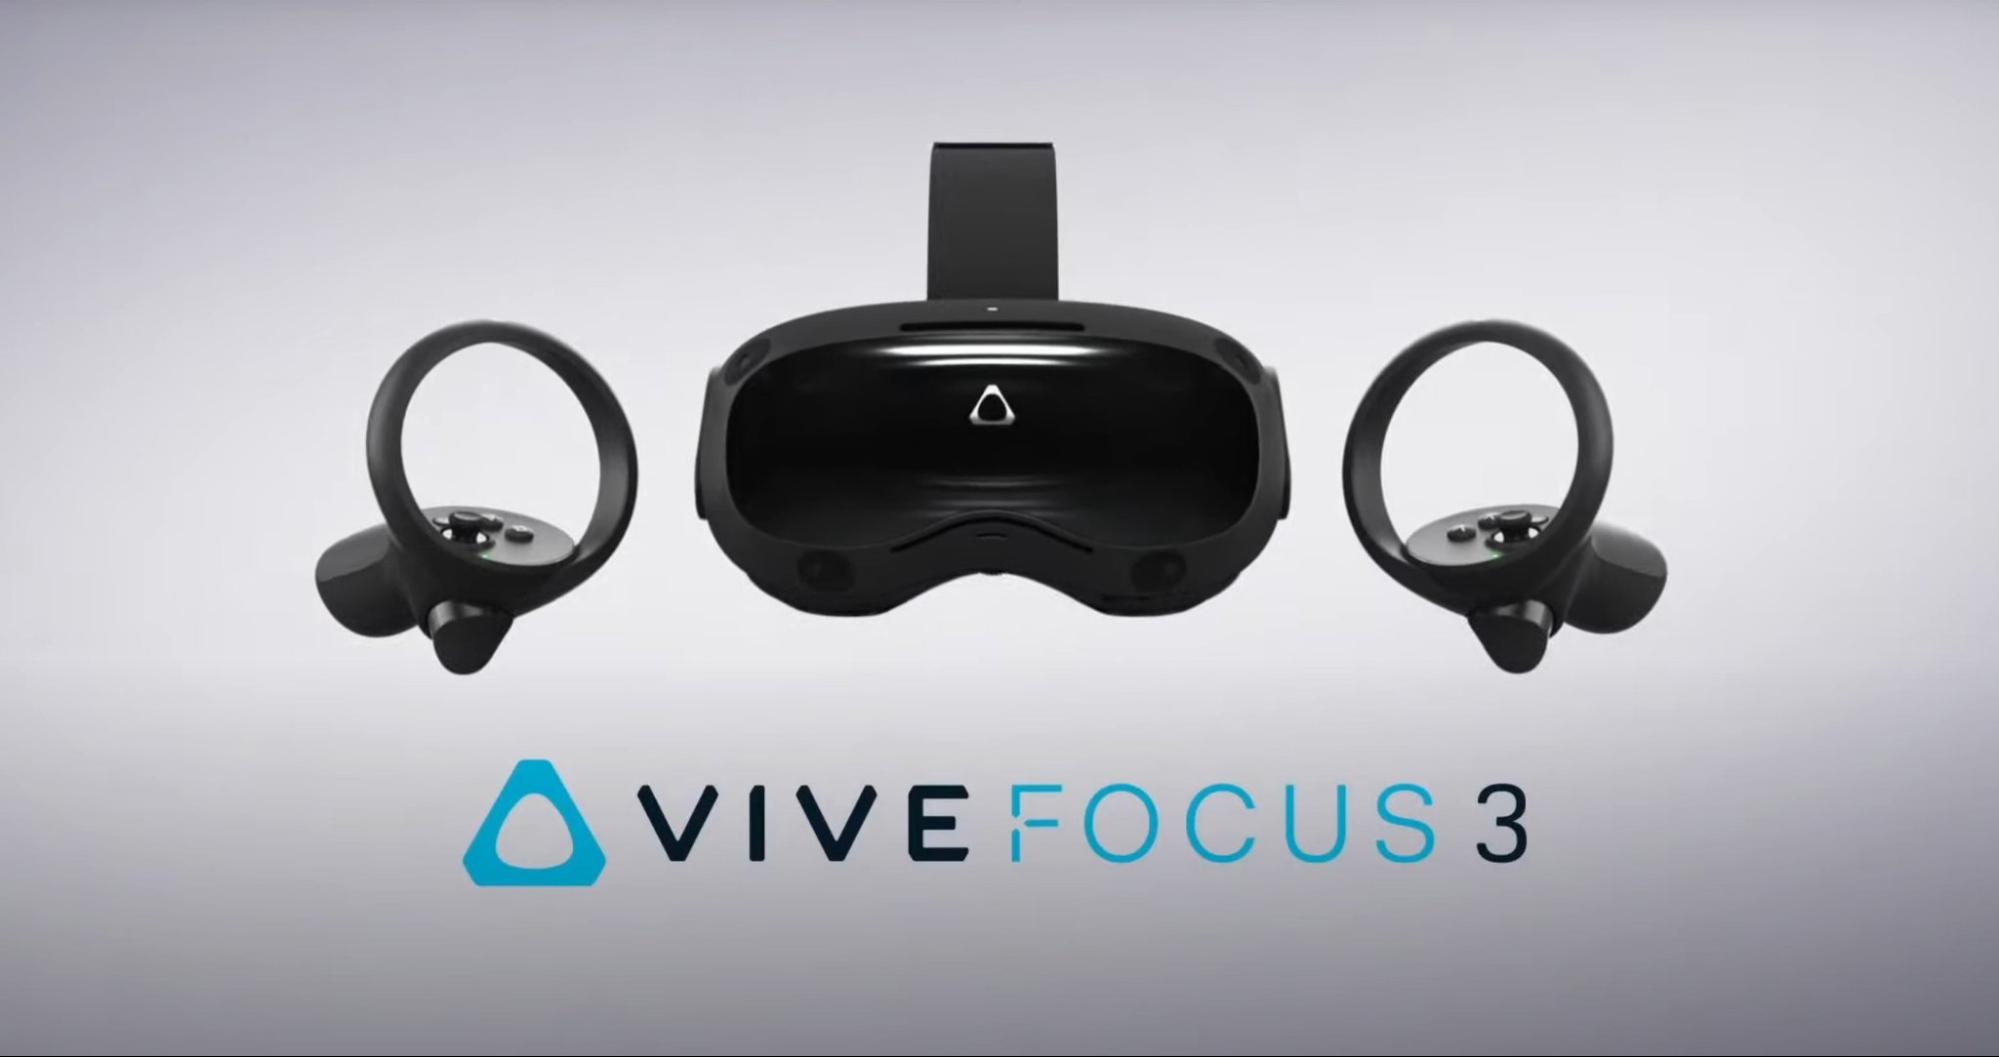 一体型VRヘッドセット「VIVE Focus 3」が発表 解像度5K、視野角120度